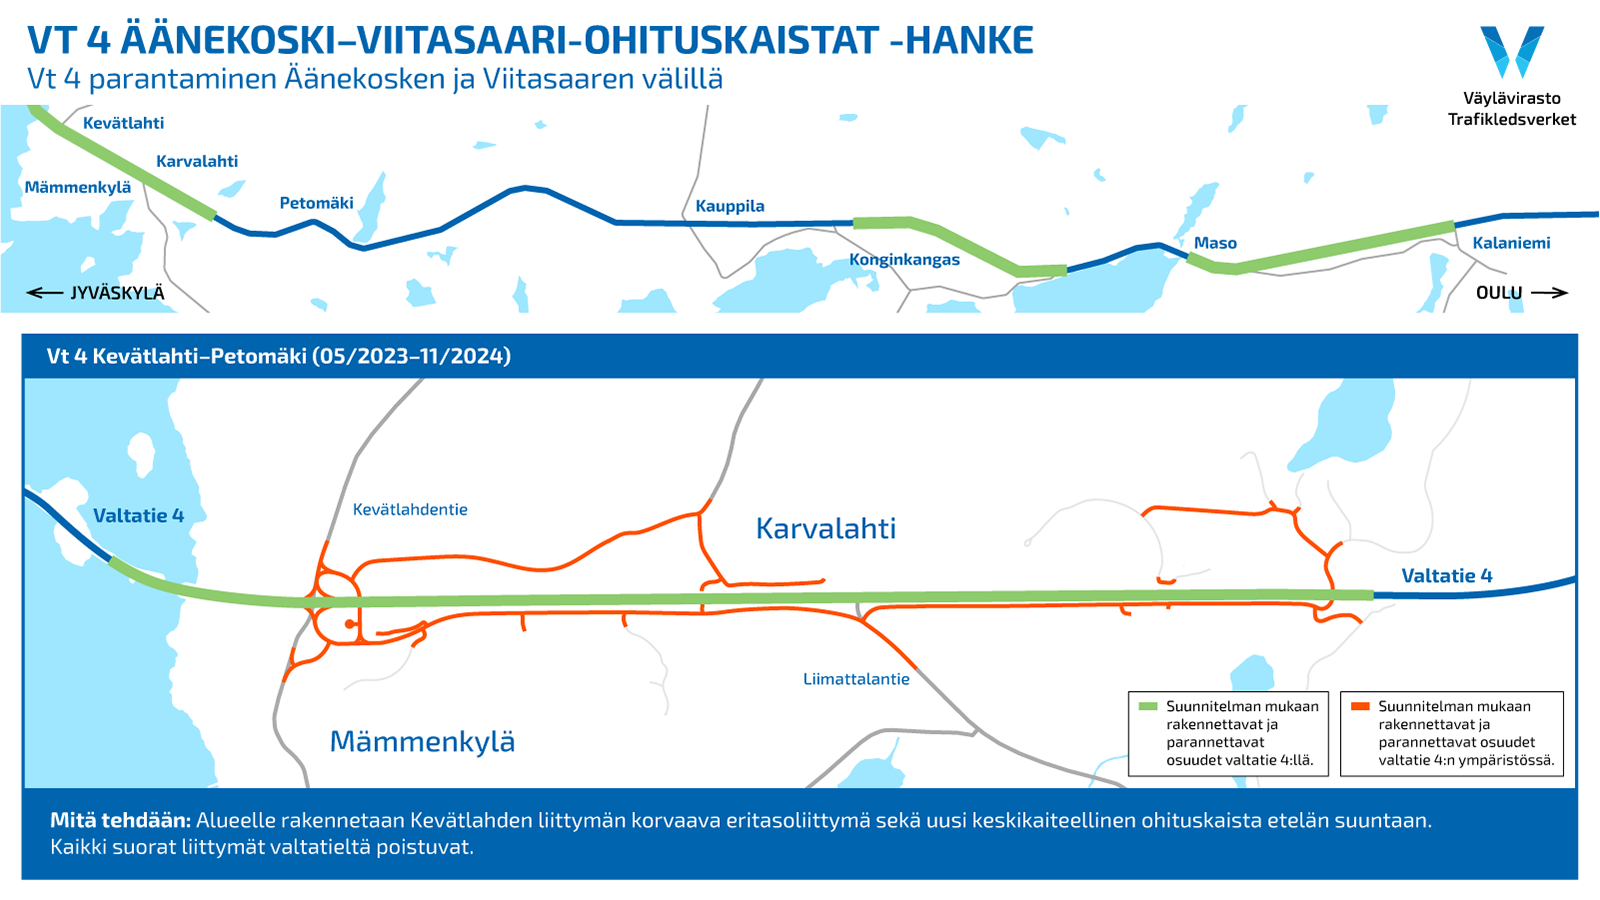 VT 4 Äänekosken ja Viitasaaren ohituskaistahankkeen tietöitä kuvaava karttagraafi